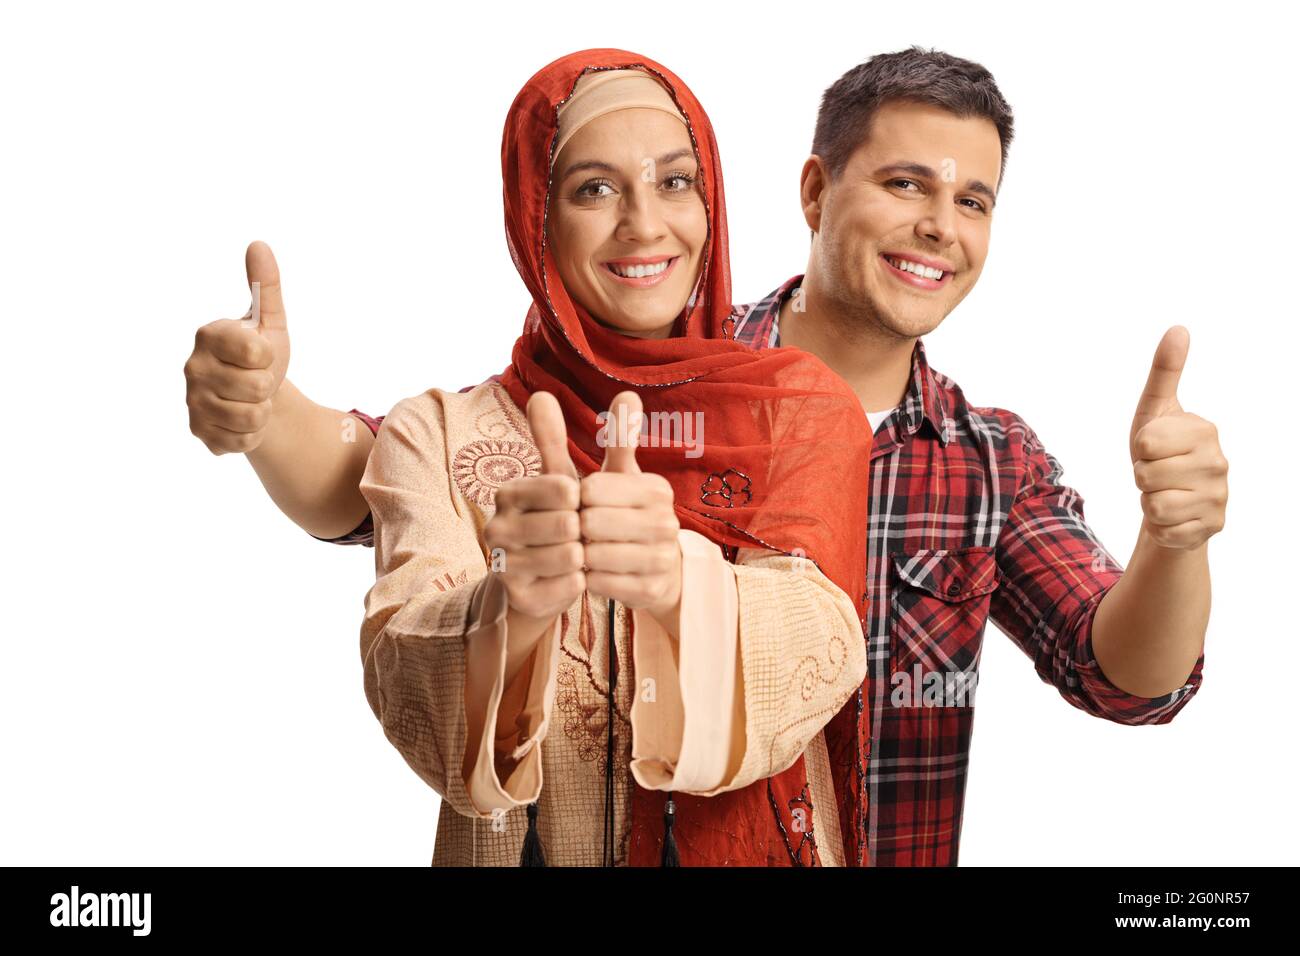 Donna musulmana e uomo cristiano che mostra i pollici e sorridendo a macchina fotografica isolata su sfondo bianco Foto Stock